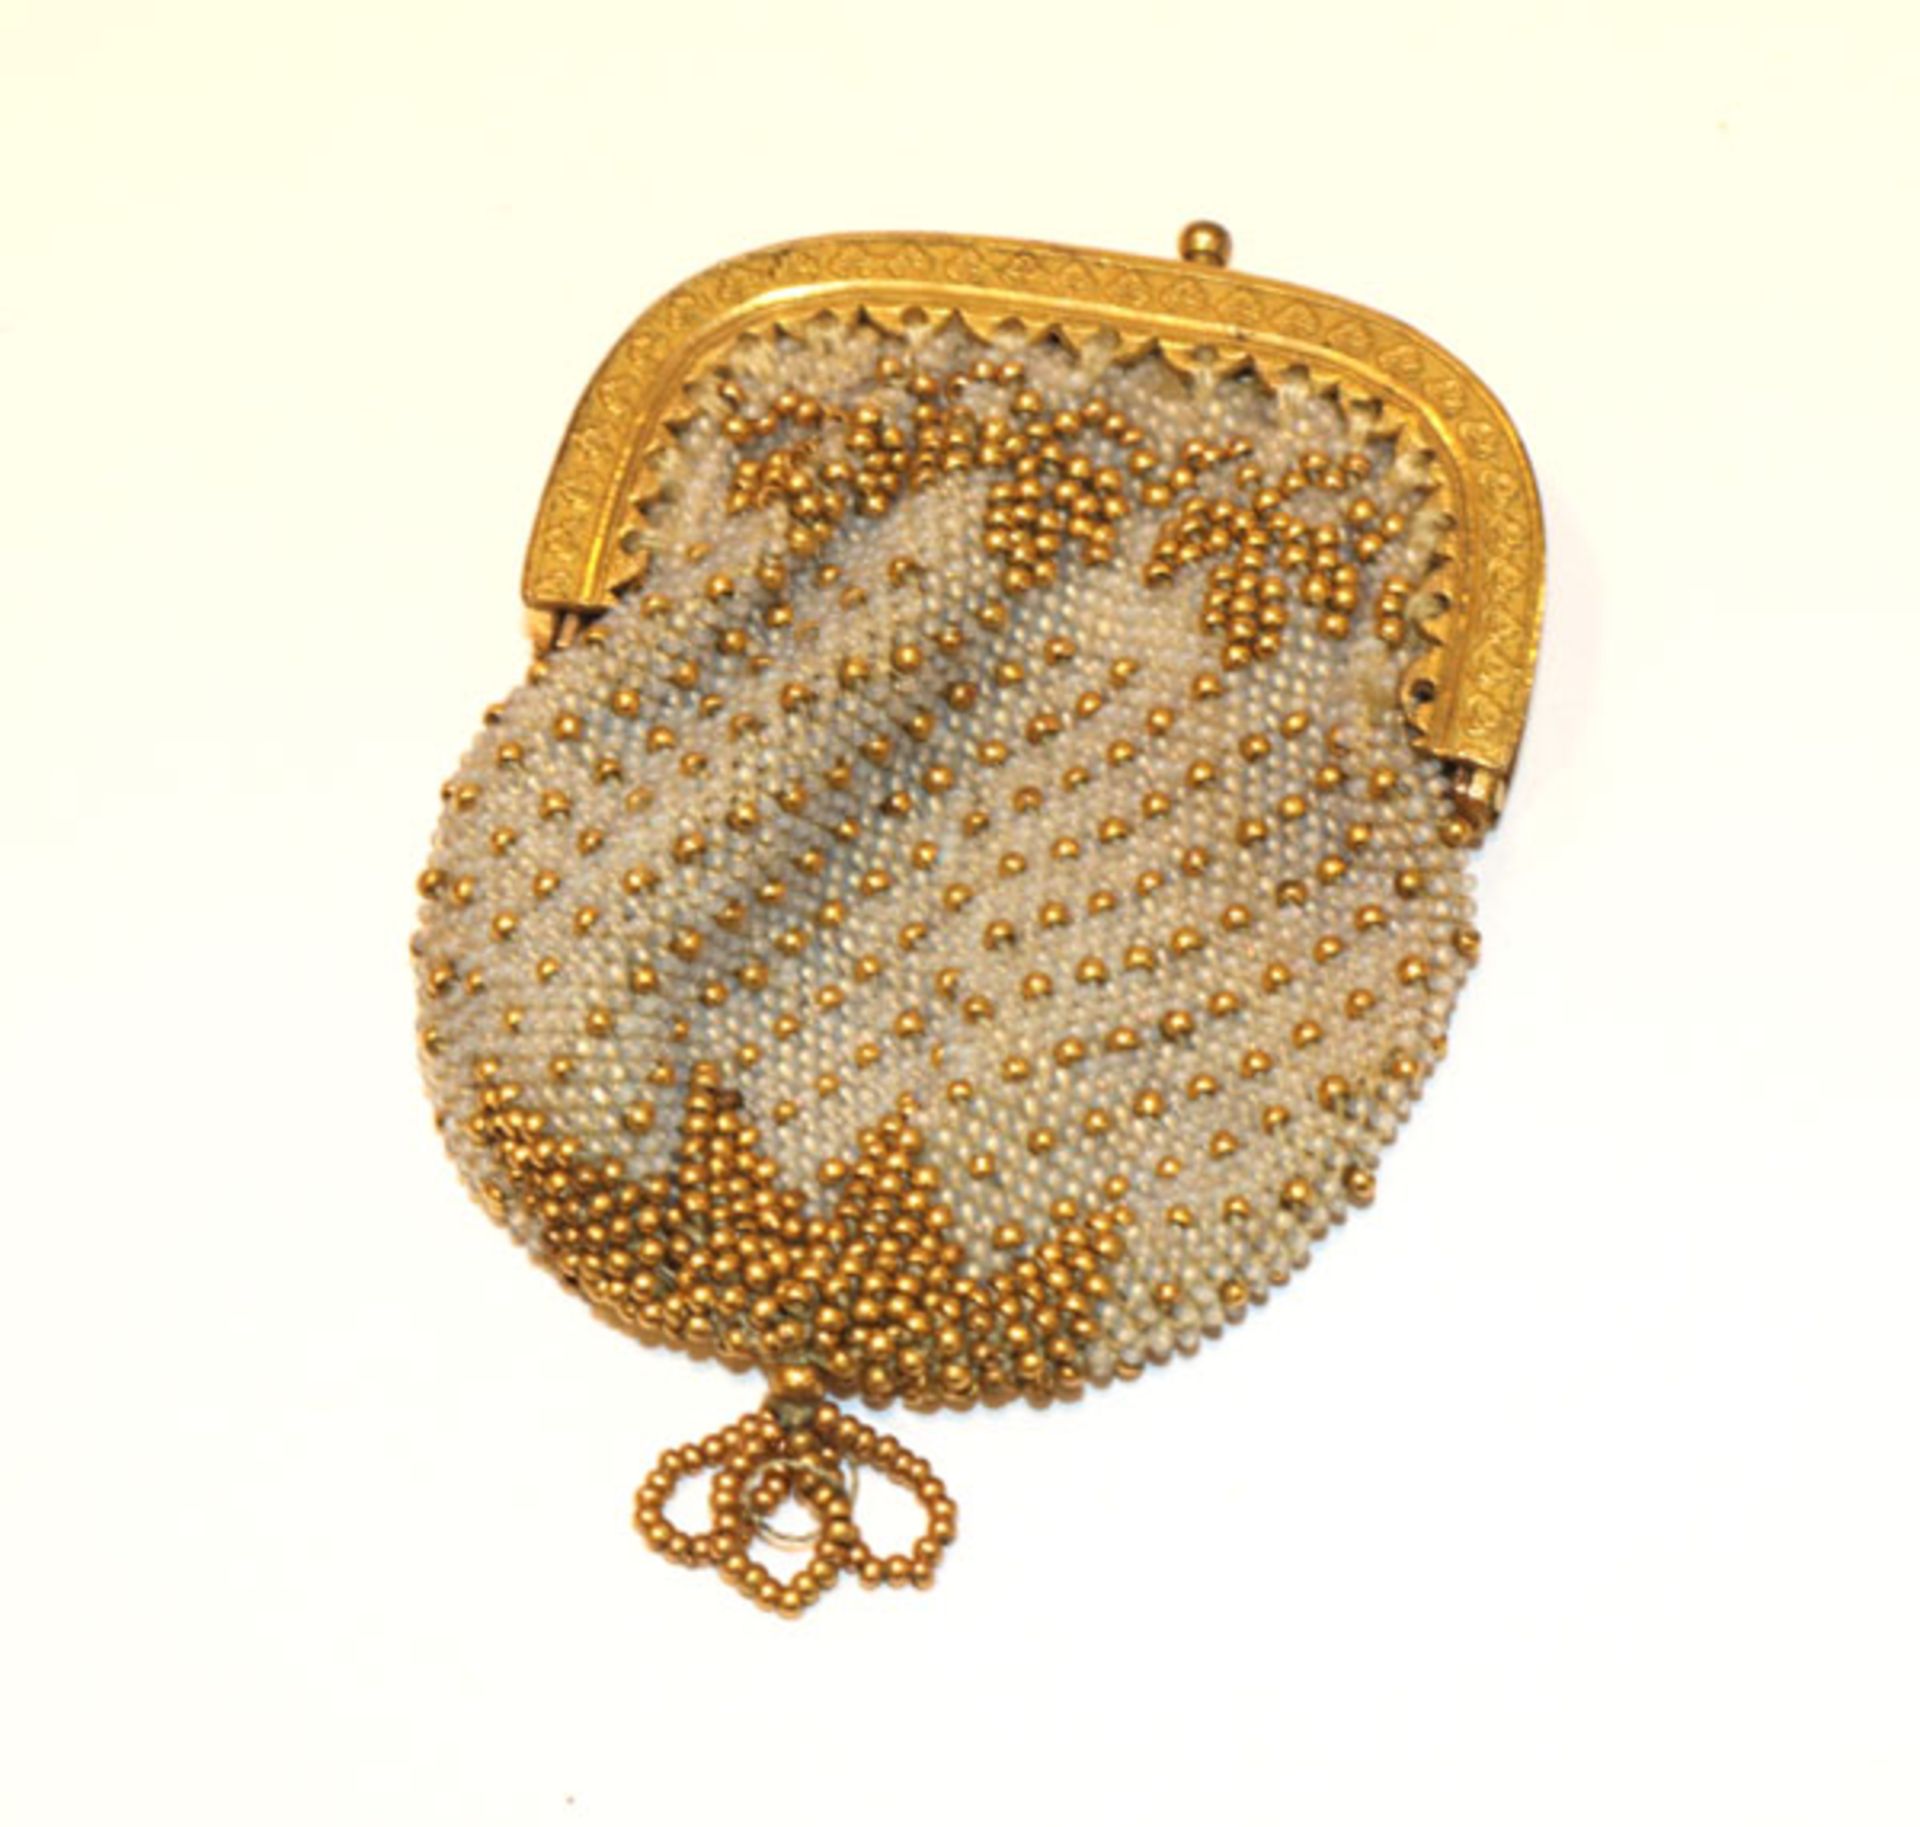 Feines Perlentäschchen, beige mit goldenen Perlchen und Metallbügel, feine Handarbeit, 6 cm x 4,5